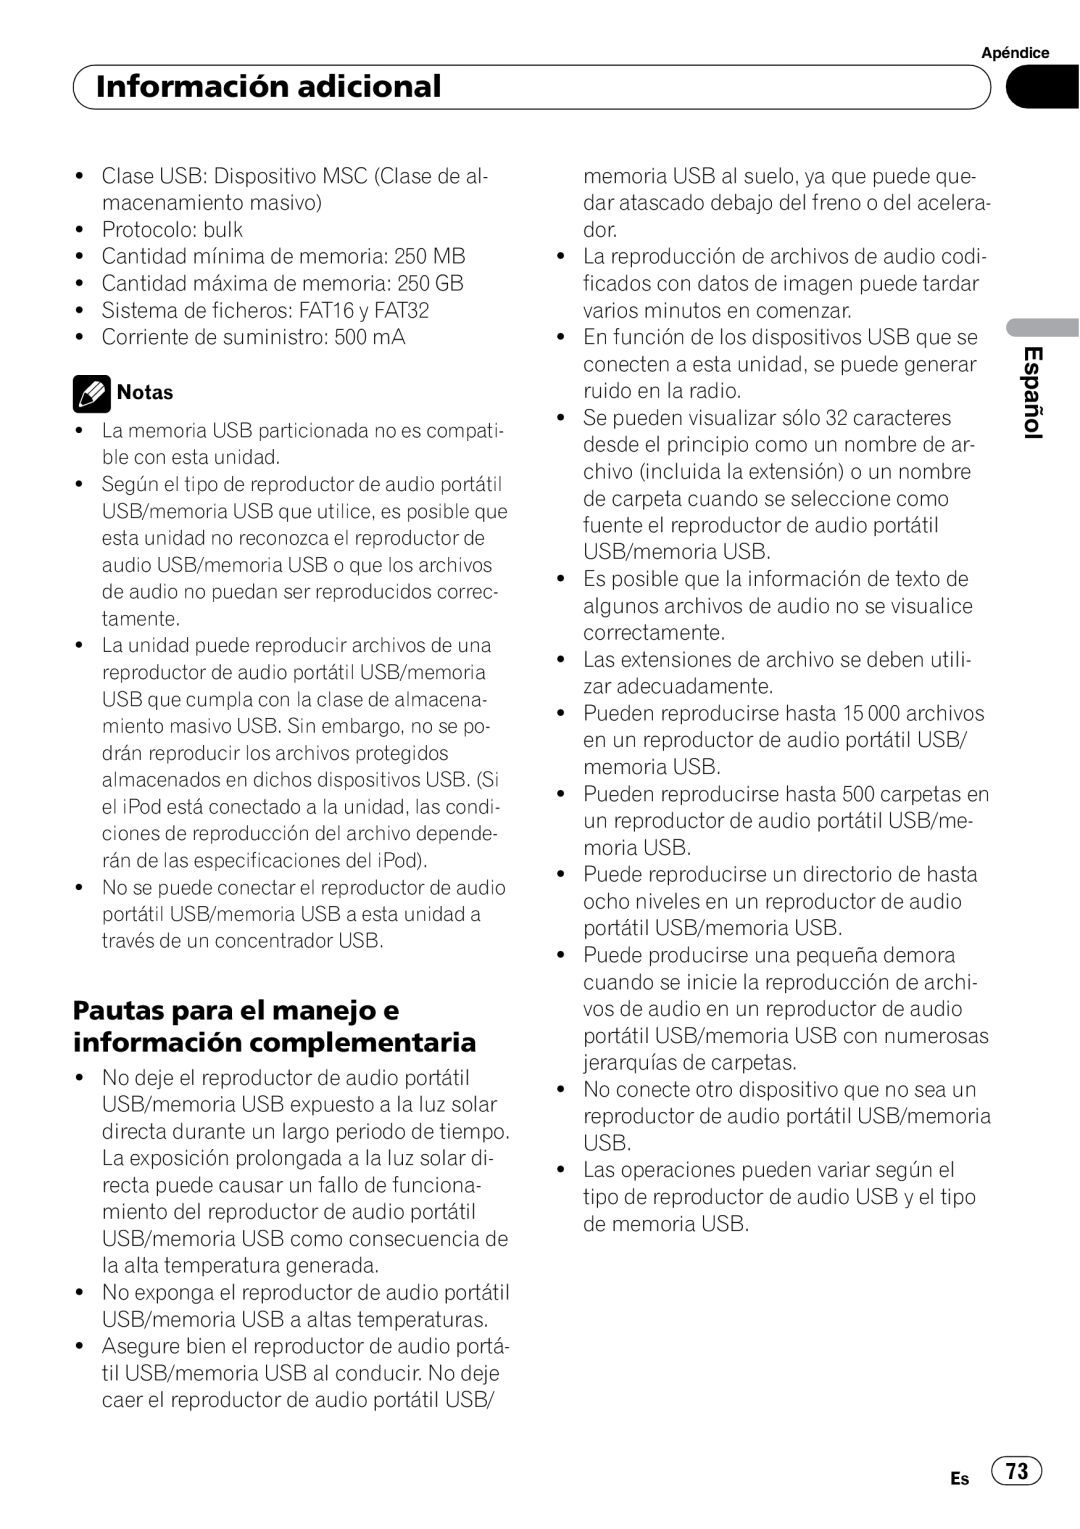 Pioneer DEH-50UB operation manual Información adicional, Español, Protocolo bulk 